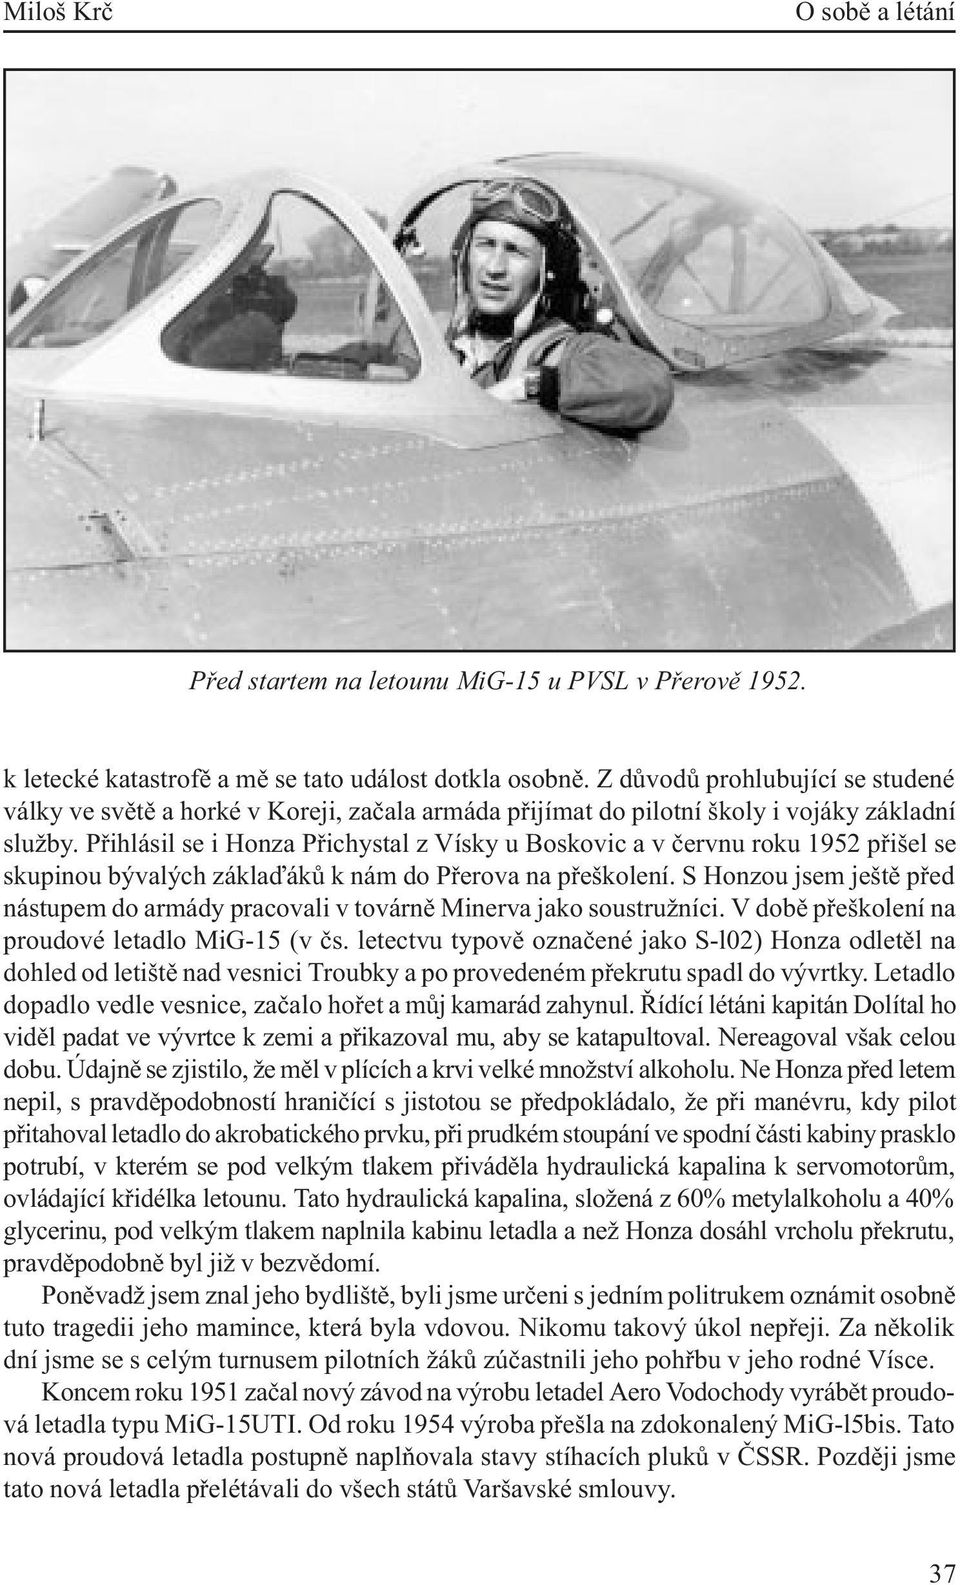 Pøihlásil se i Honza Pøichystal z Vísky u Boskovic a v èervnu roku 1952 pøišel se skupinou bývalých záklaïákù k nám do Pøerova na pøeškolení.